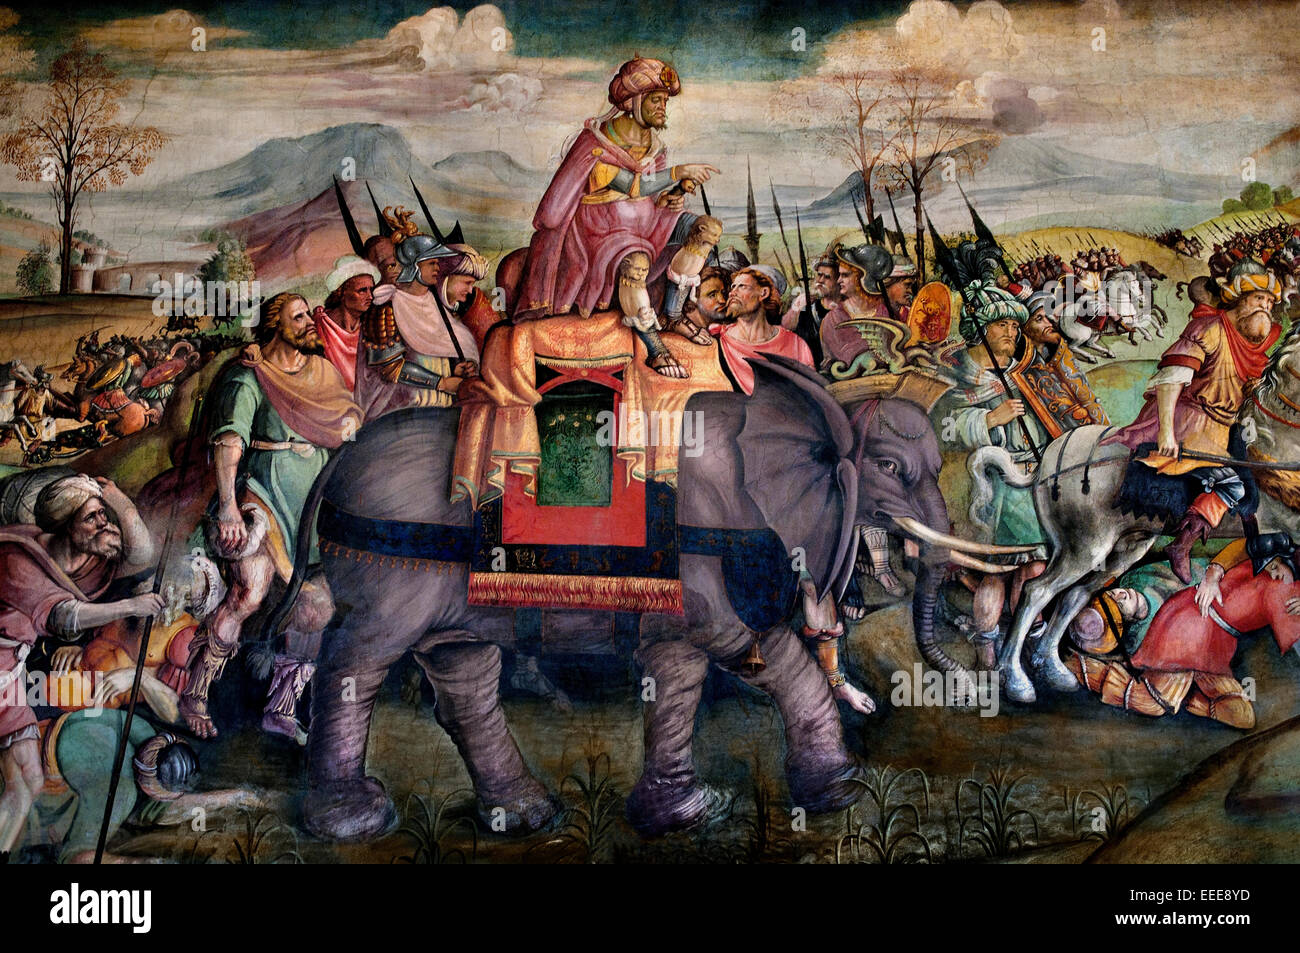 Hannibal en Italie Fresco Jacopo Ripanda (attr.) Début de 16e siècle Italie Rome italien du Musée Capitolin Italie Banque D'Images